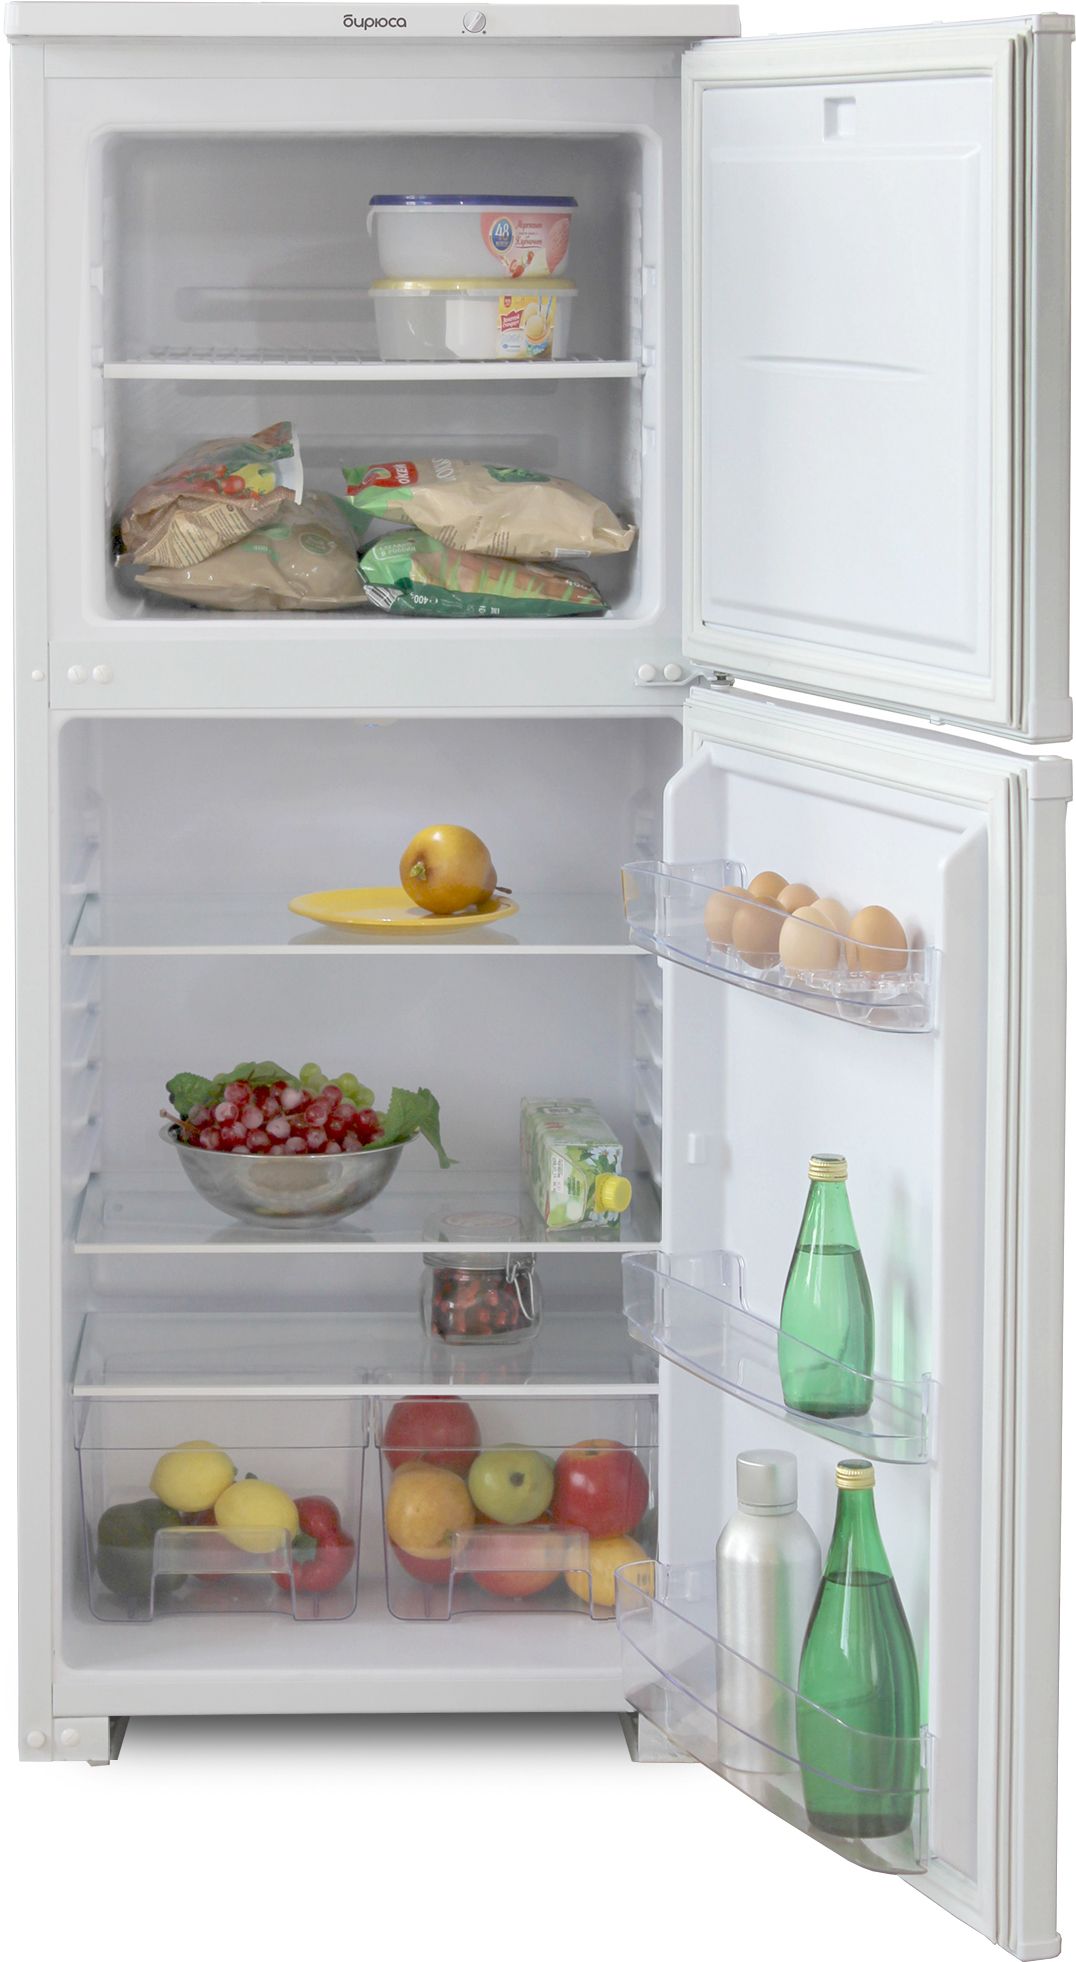 холодильник бирюса 153, купить в Красноярске холодильник бирюса 153,  купить в Красноярске дешево холодильник бирюса 153, купить в Красноярске минимальной цене холодильник бирюса 153